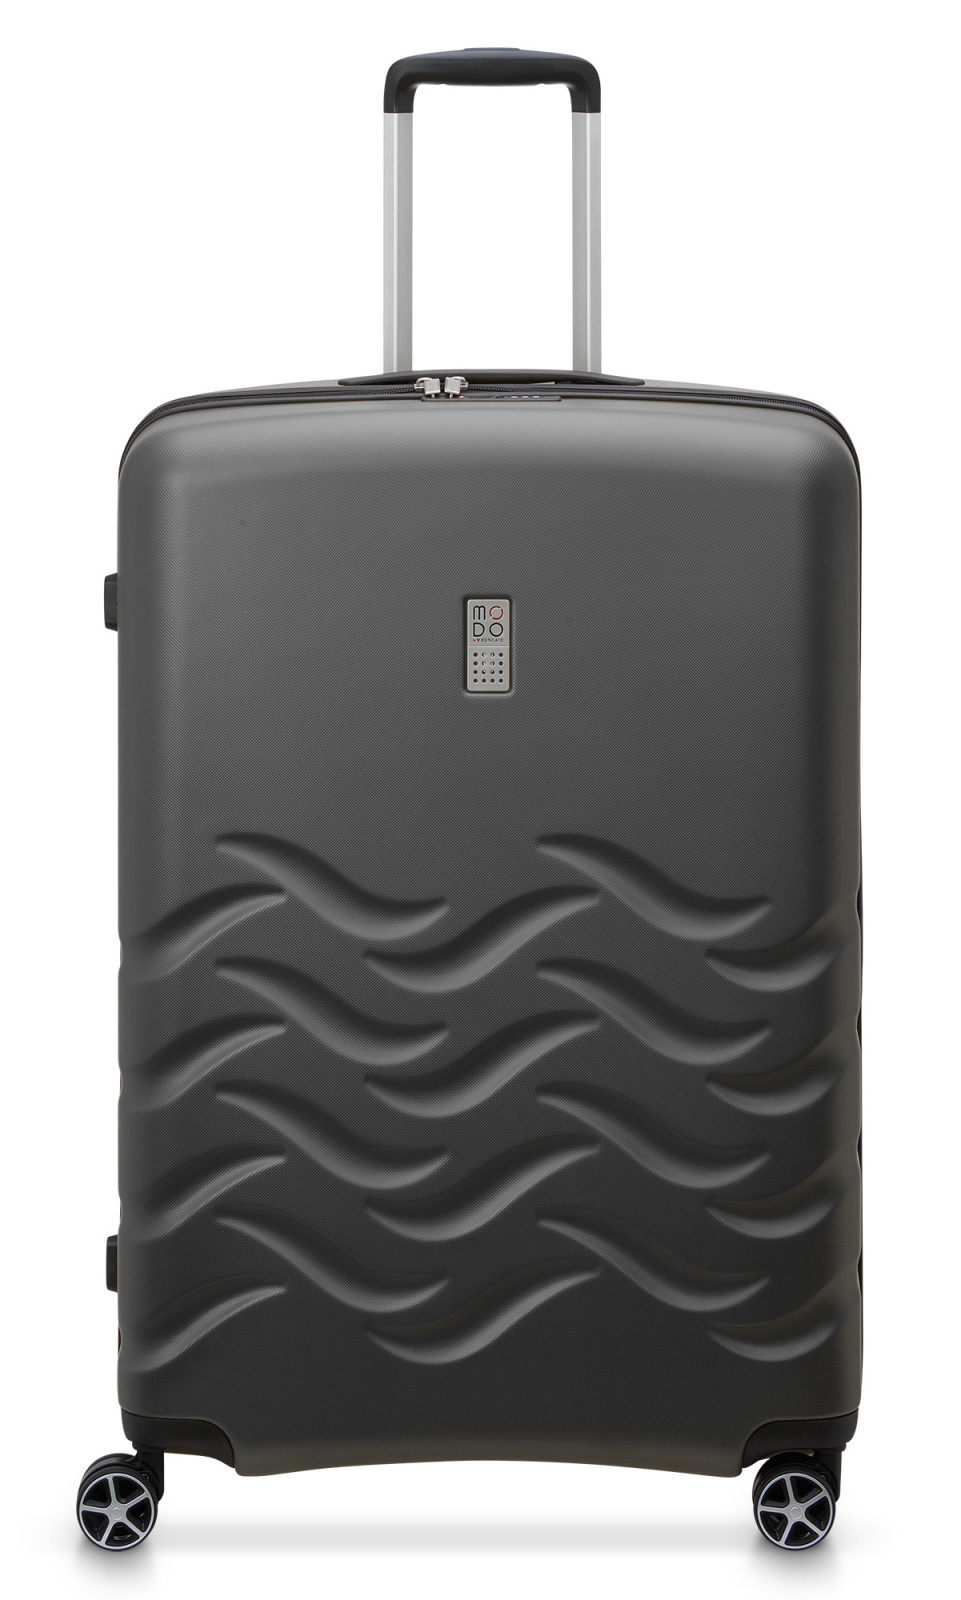 Cestovní kufr Modo by Roncato Shine L